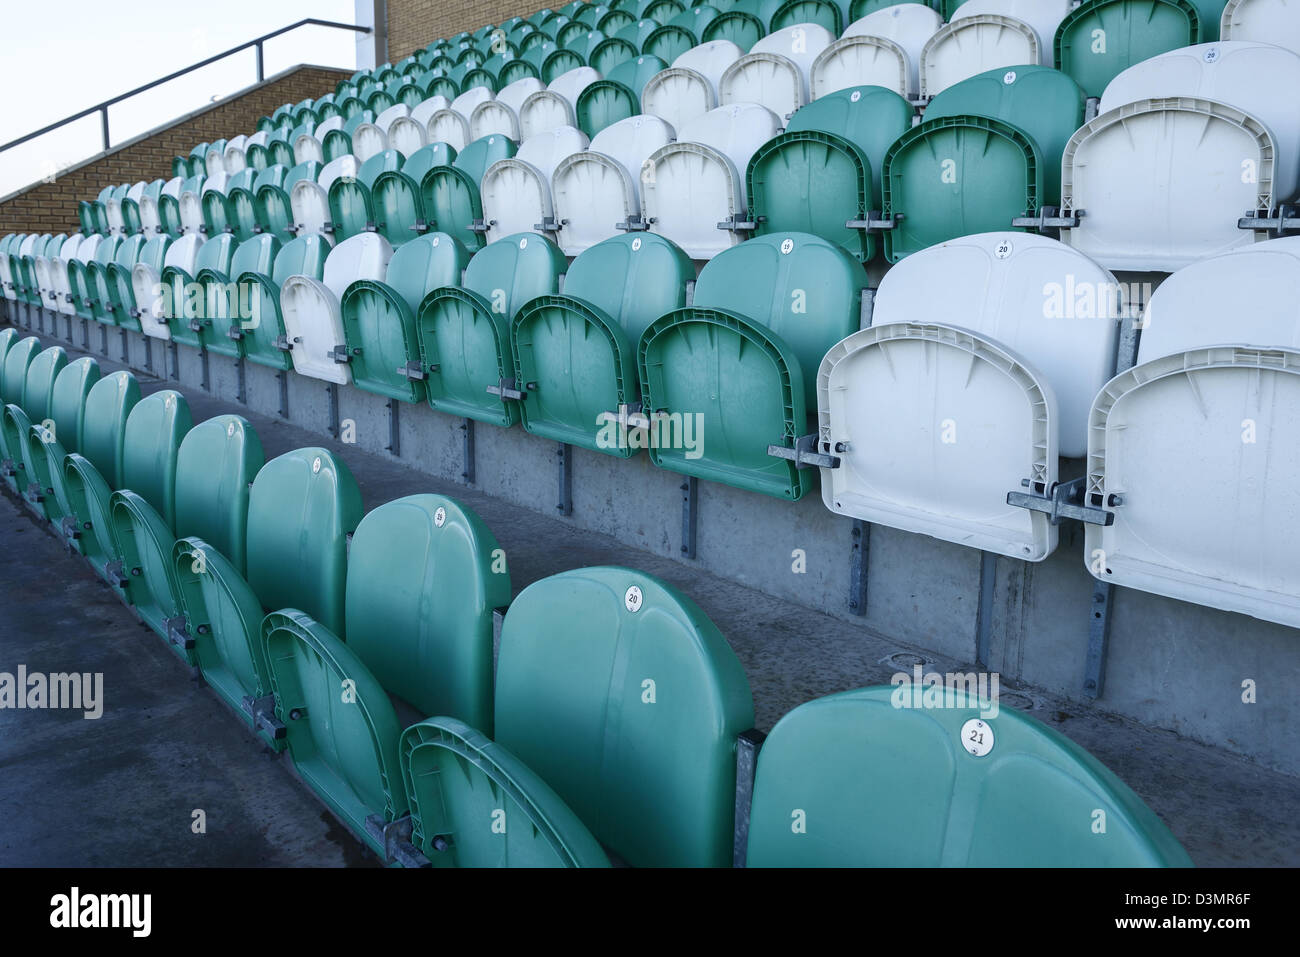 White and green plastic stadium seating Stock Photo